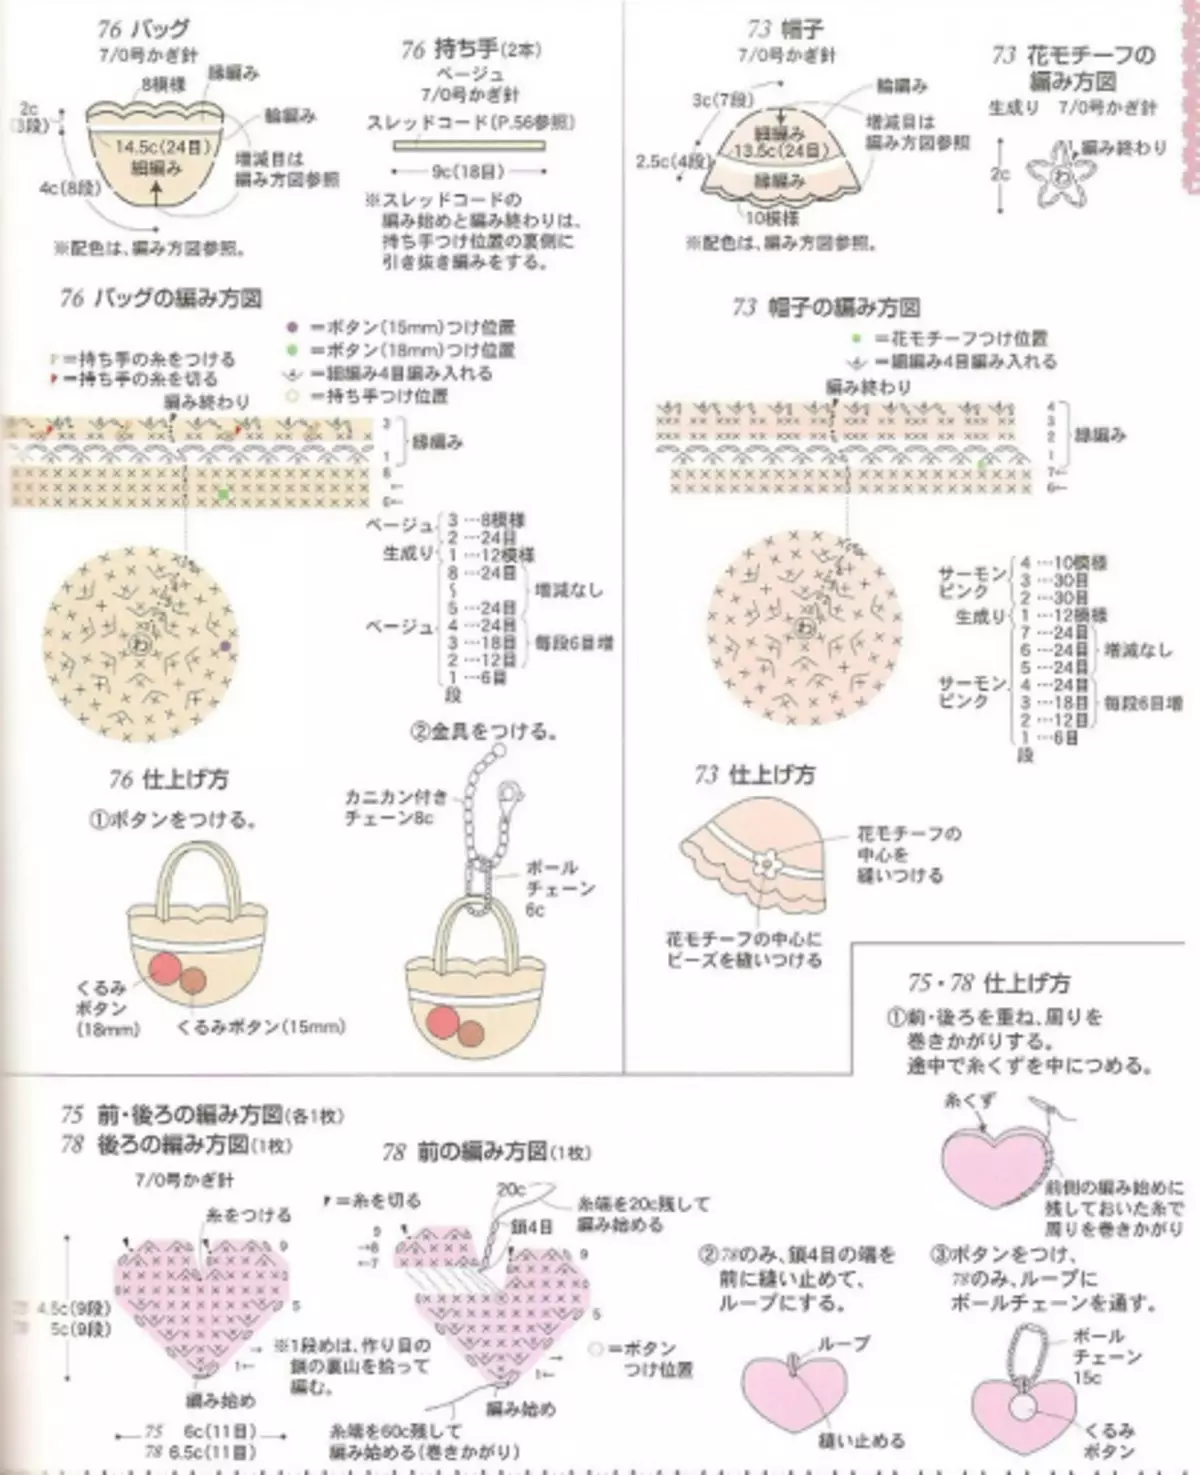 Revista japonesa amb esquemes de ganxet